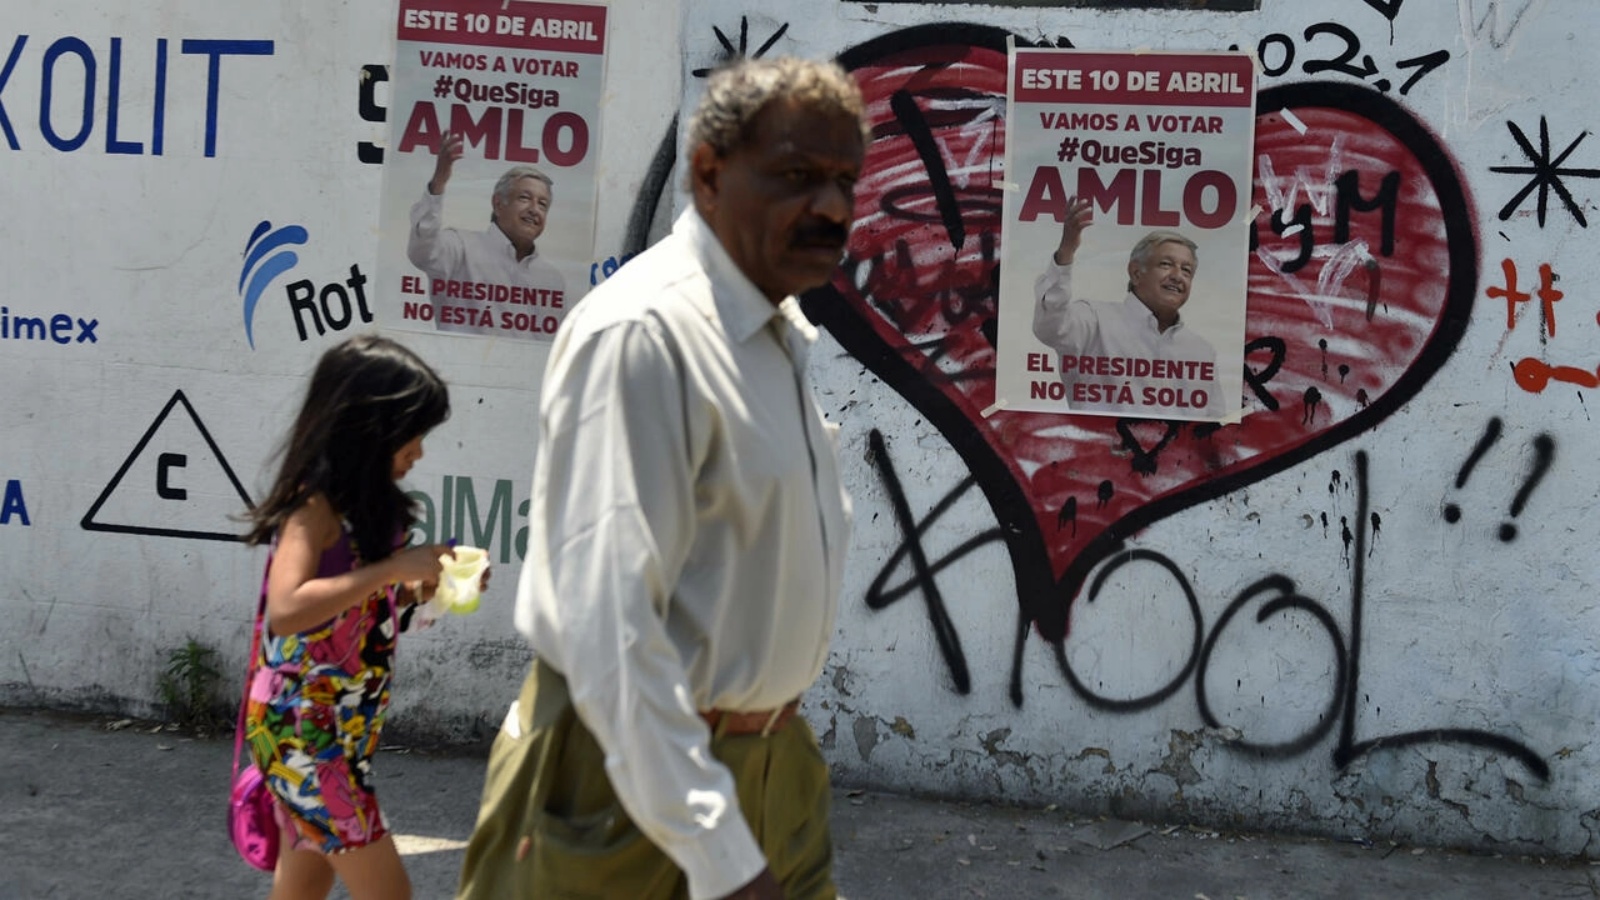 أشخاص يمشون بجوار ملصقات تروج لاستفتاء سحب الثقة من الرئاسة في مكسيكو سيتي